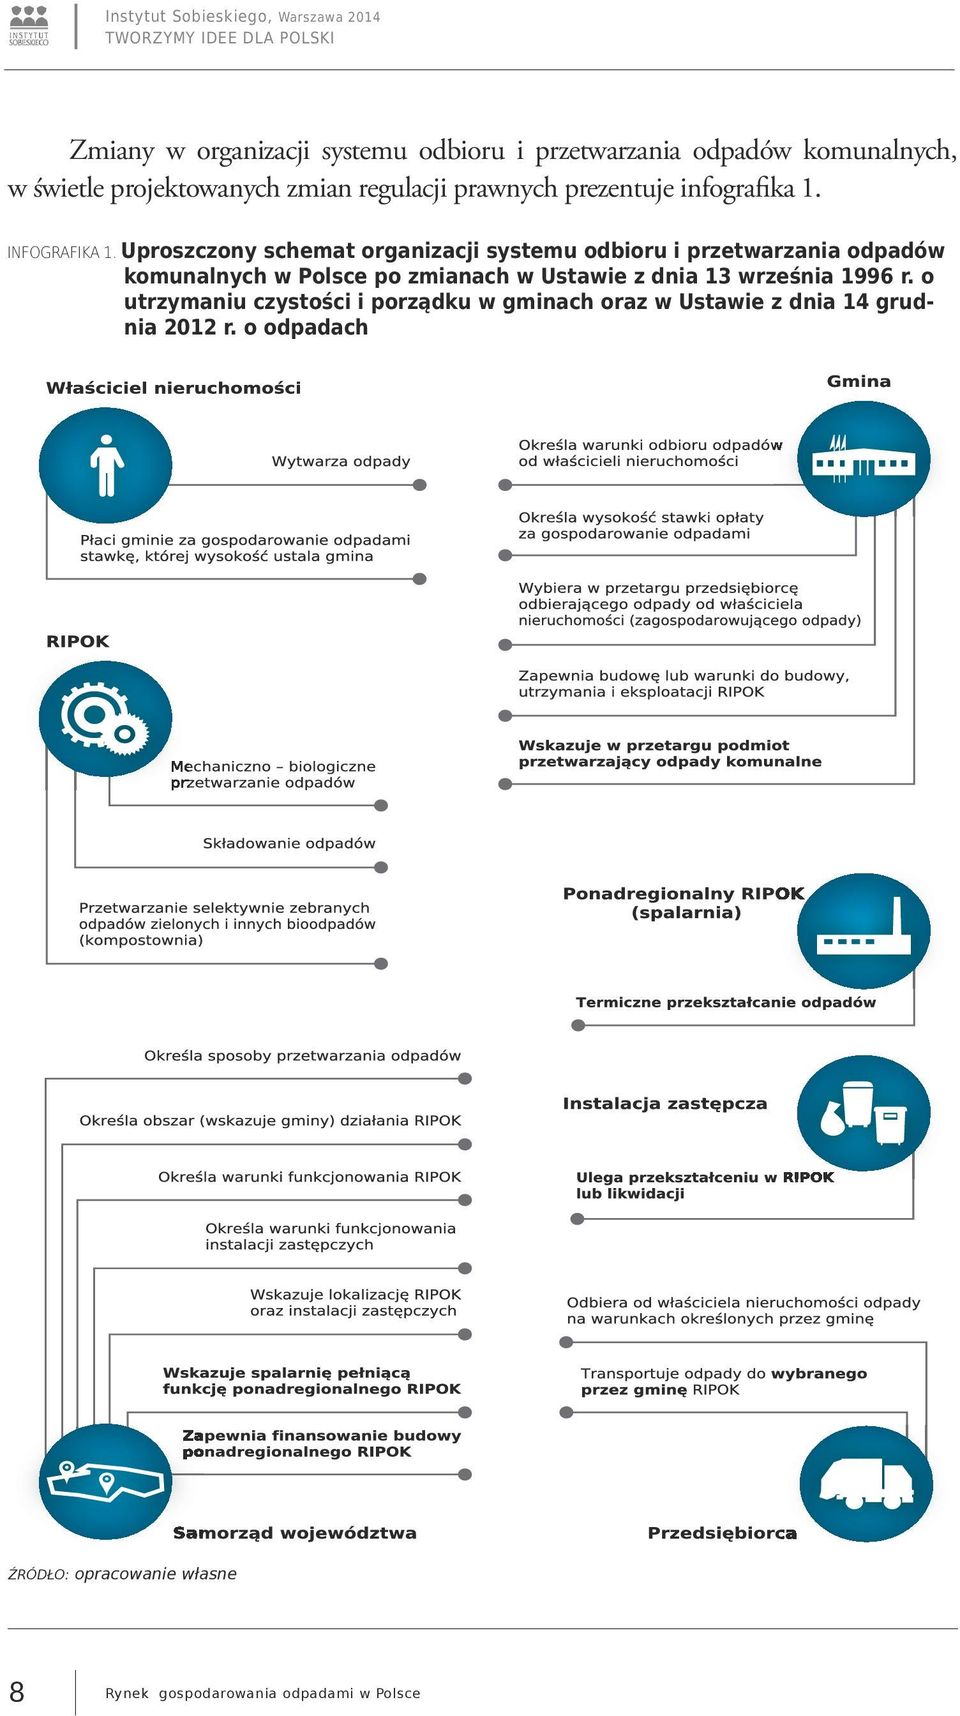 Uproszczony schemat organizacji systemu odbioru i przetwarzania odpadów komunalnych w Polsce po zmianach w Ustawie z